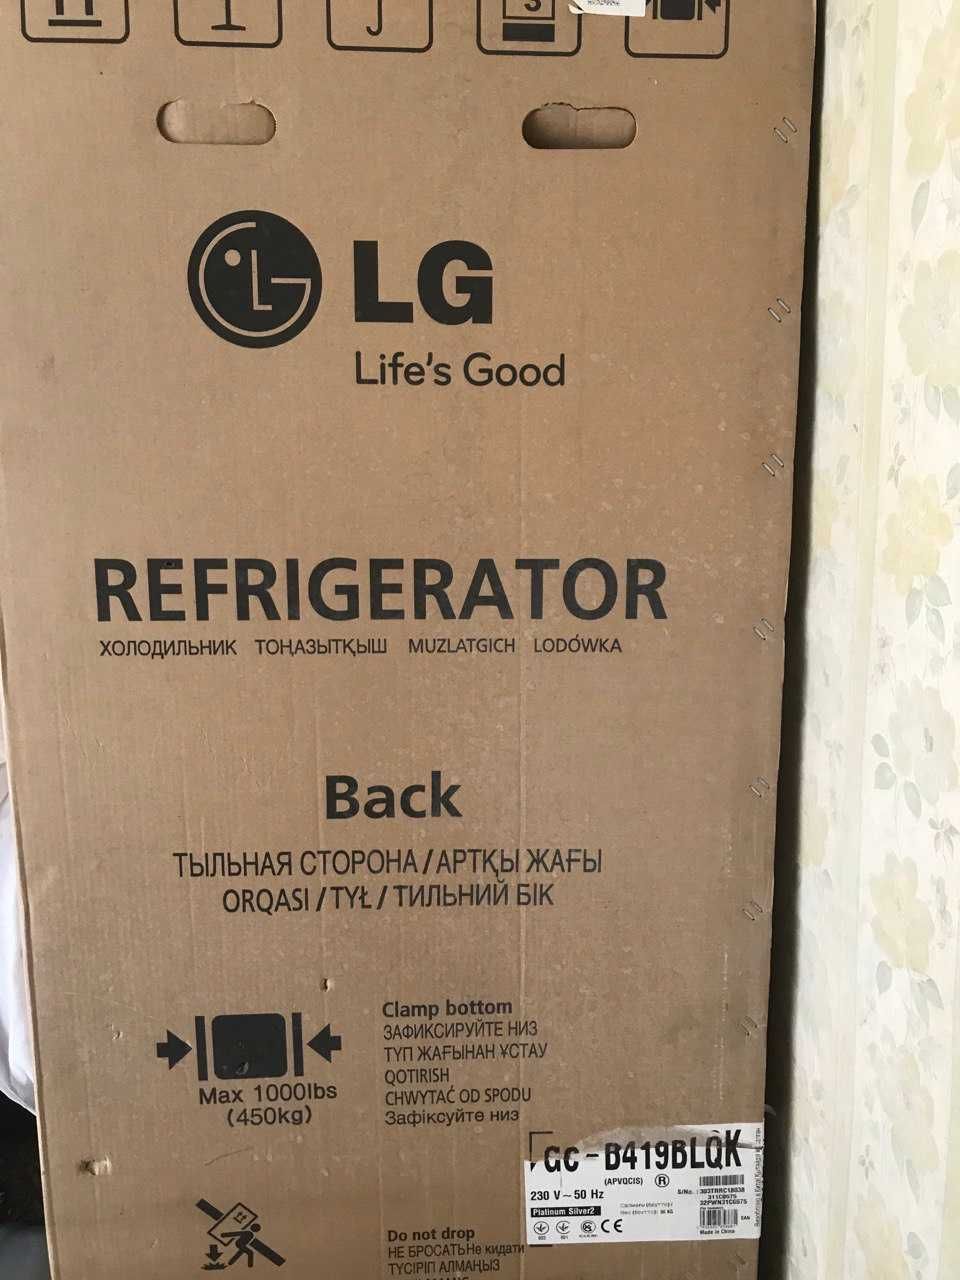 Продается новый 2-х камерный холодильник (в упаковке) LG GC-B419BLQK